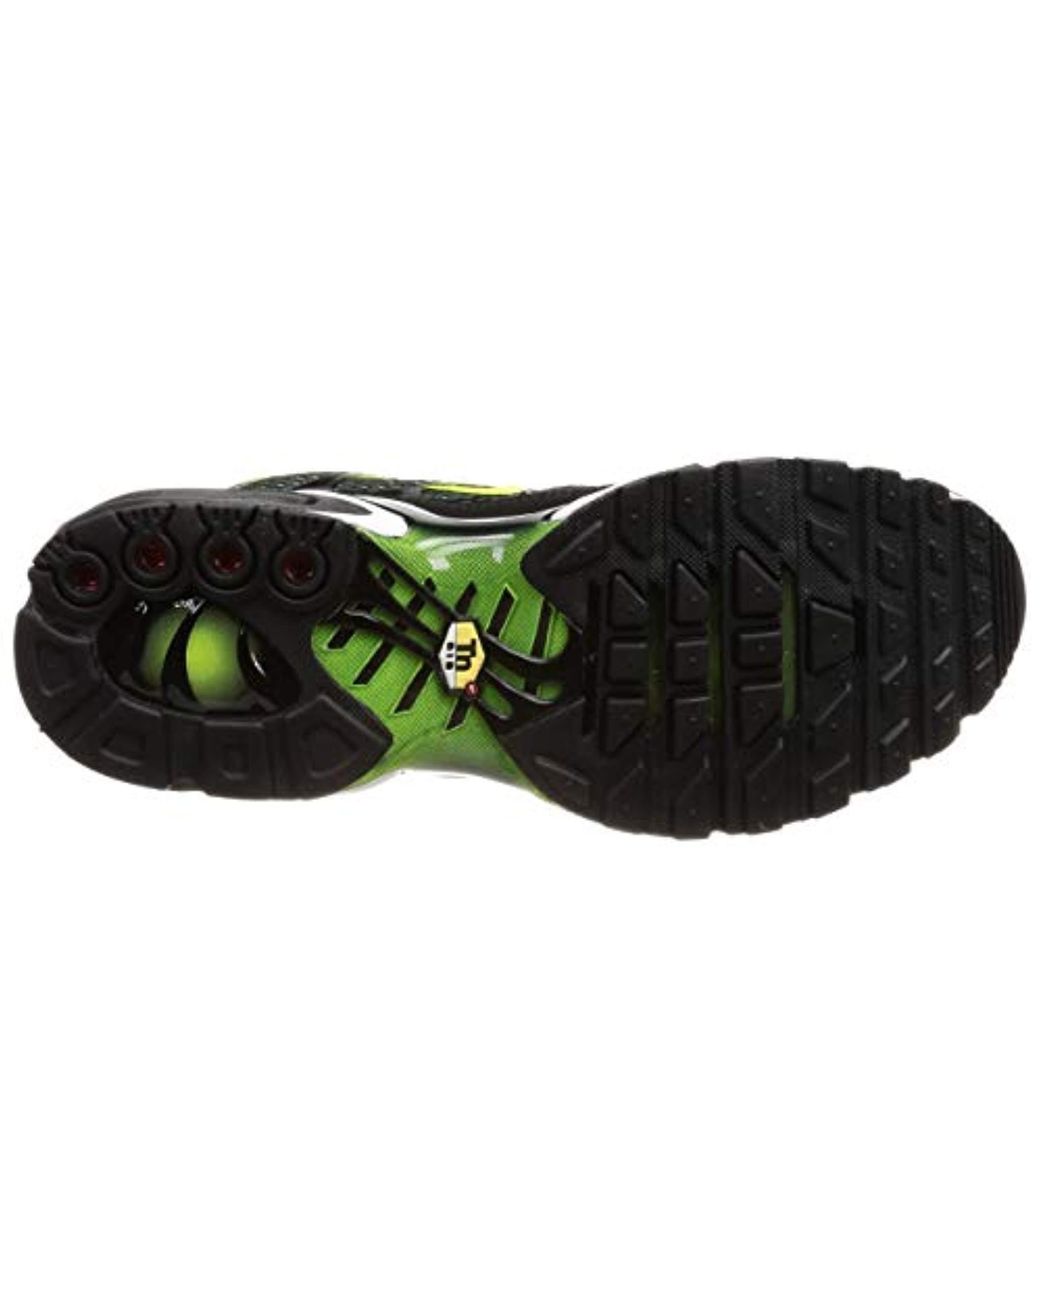 Creo que estoy enfermo Construir sobre sorpresa Nike Original Air Max Plus Tuned 1 Tn Black Volt Green Trainers Shoes  852630 036 for Men | Lyst UK